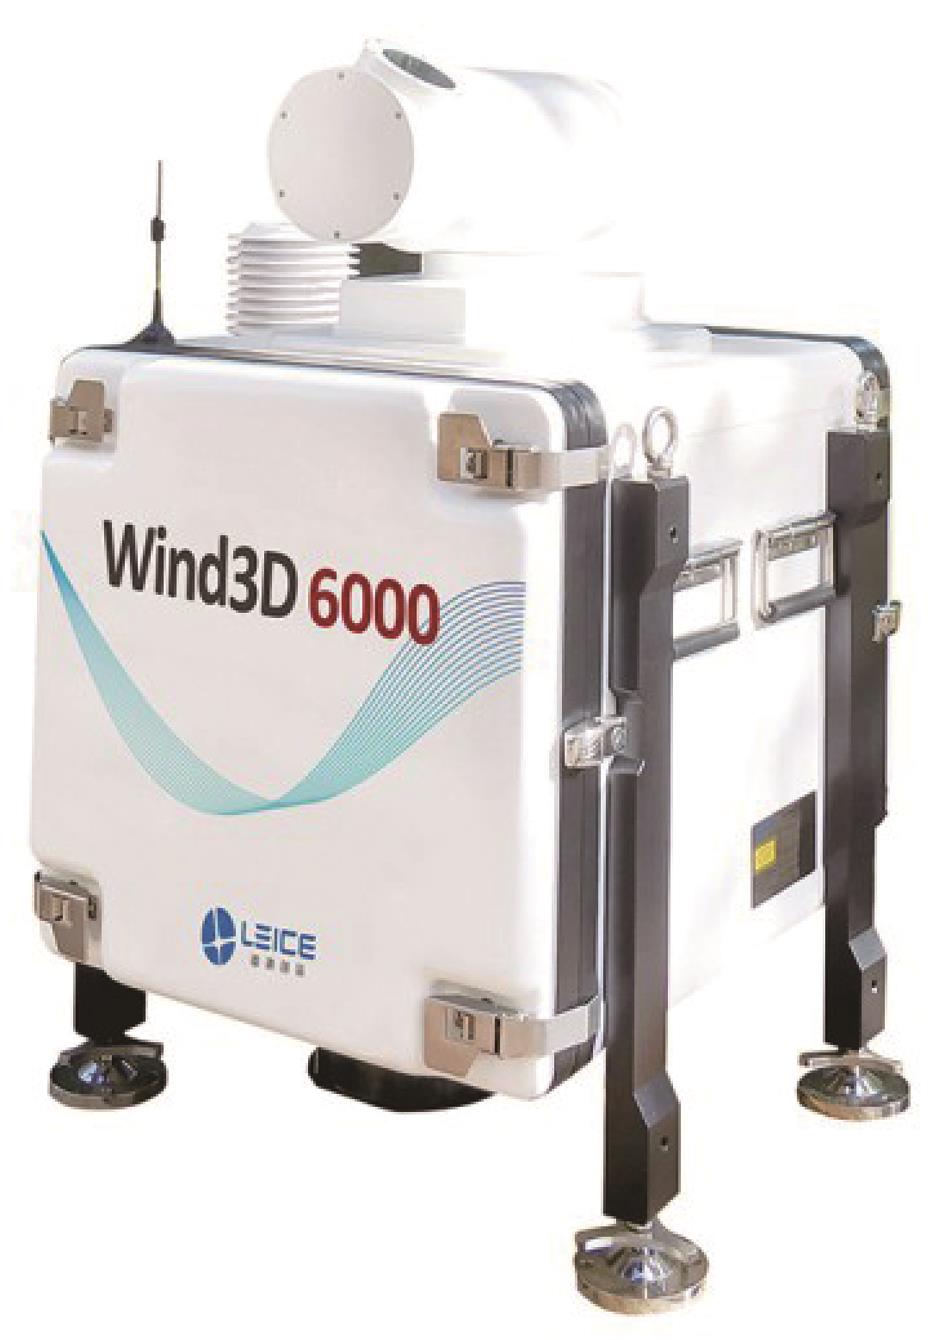 Wind3D 6000 scanning wind lidar